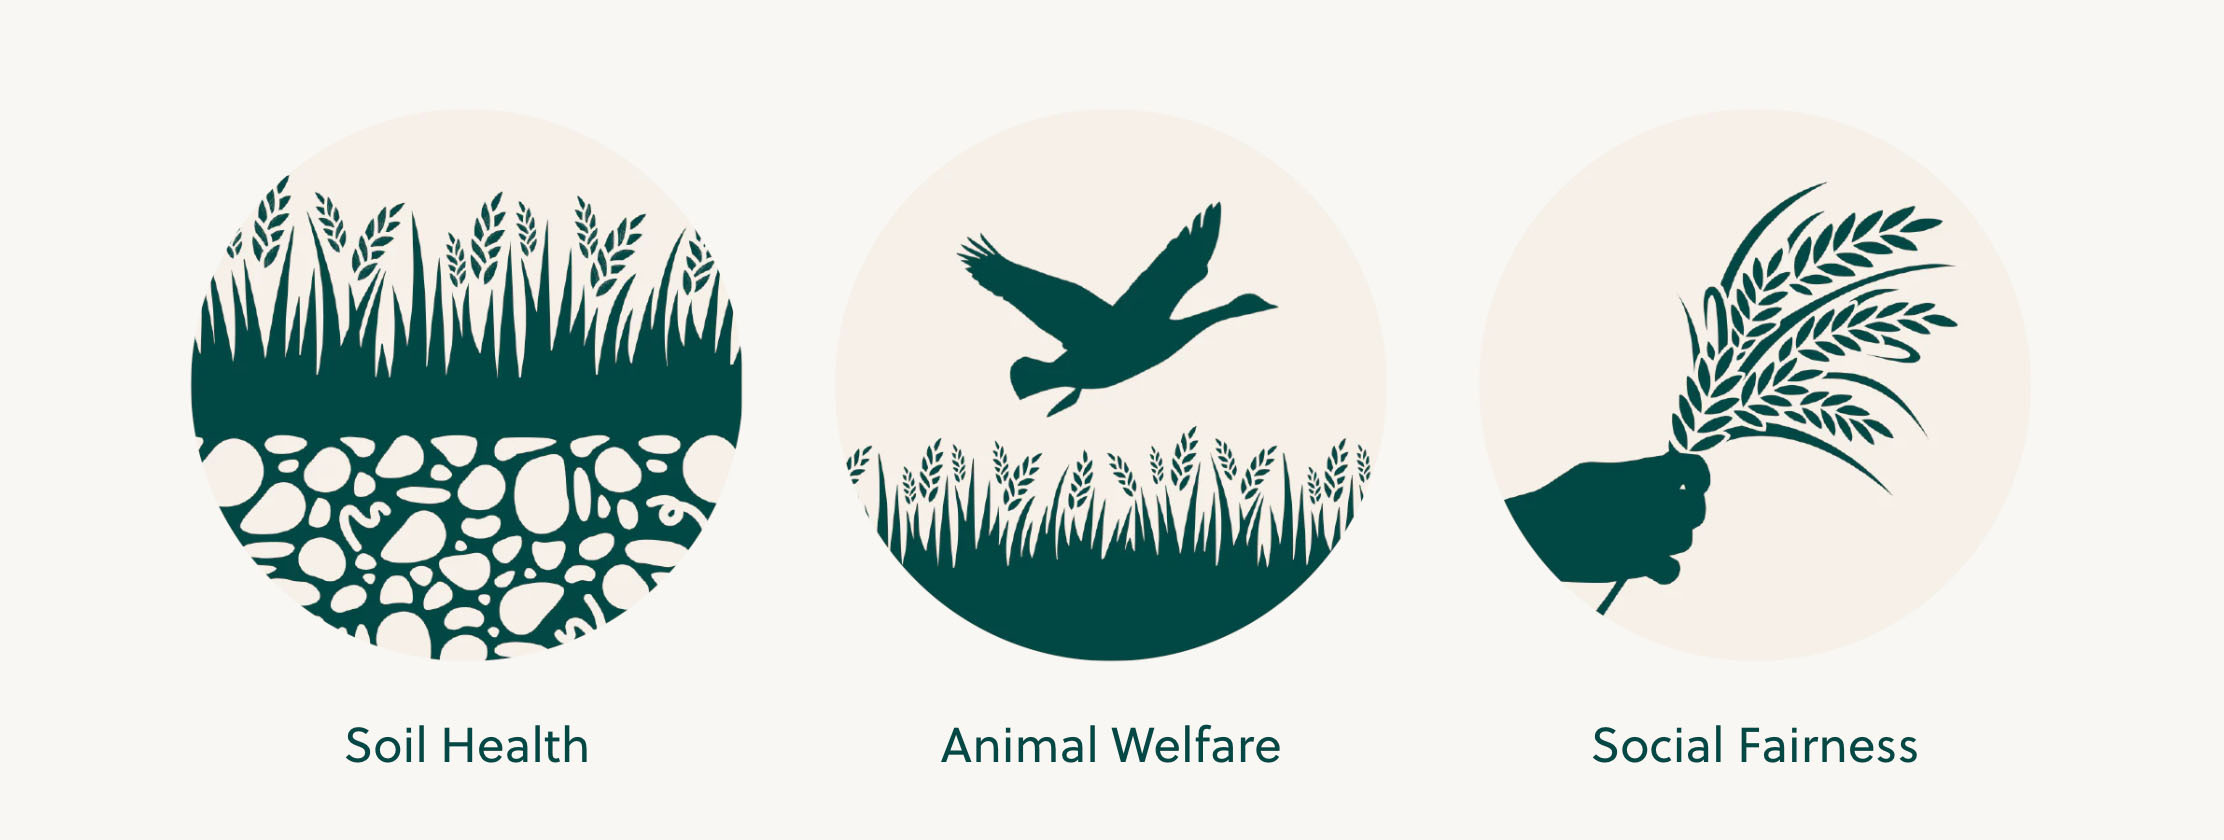 Soil Health, Animal Welfare, Social Fairness